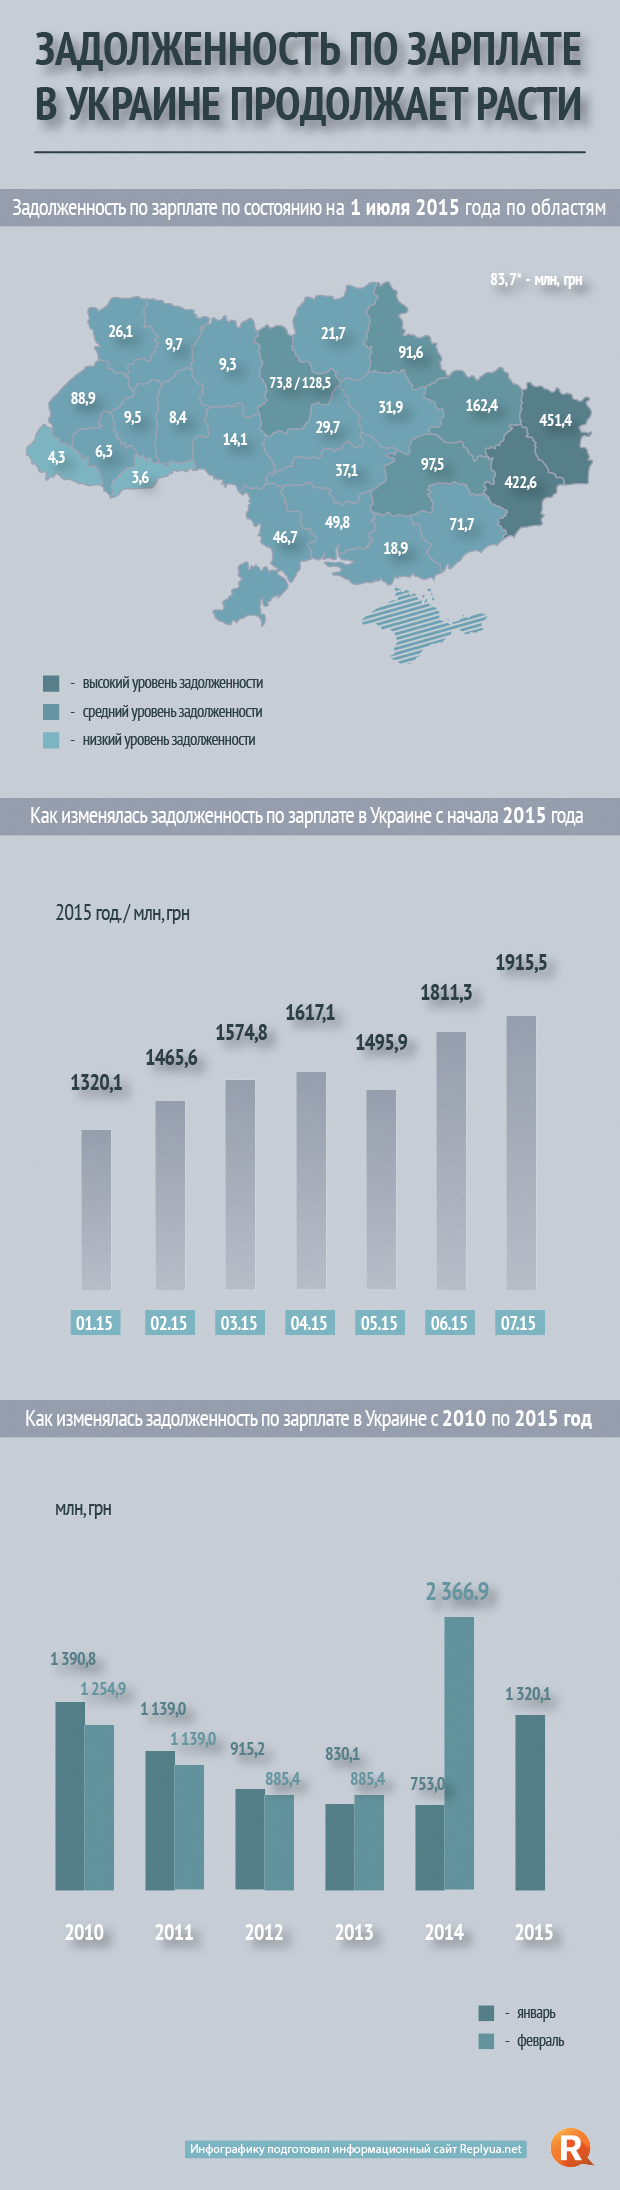 Задолженность по зарплате в Украине продолжает расти - инфографика